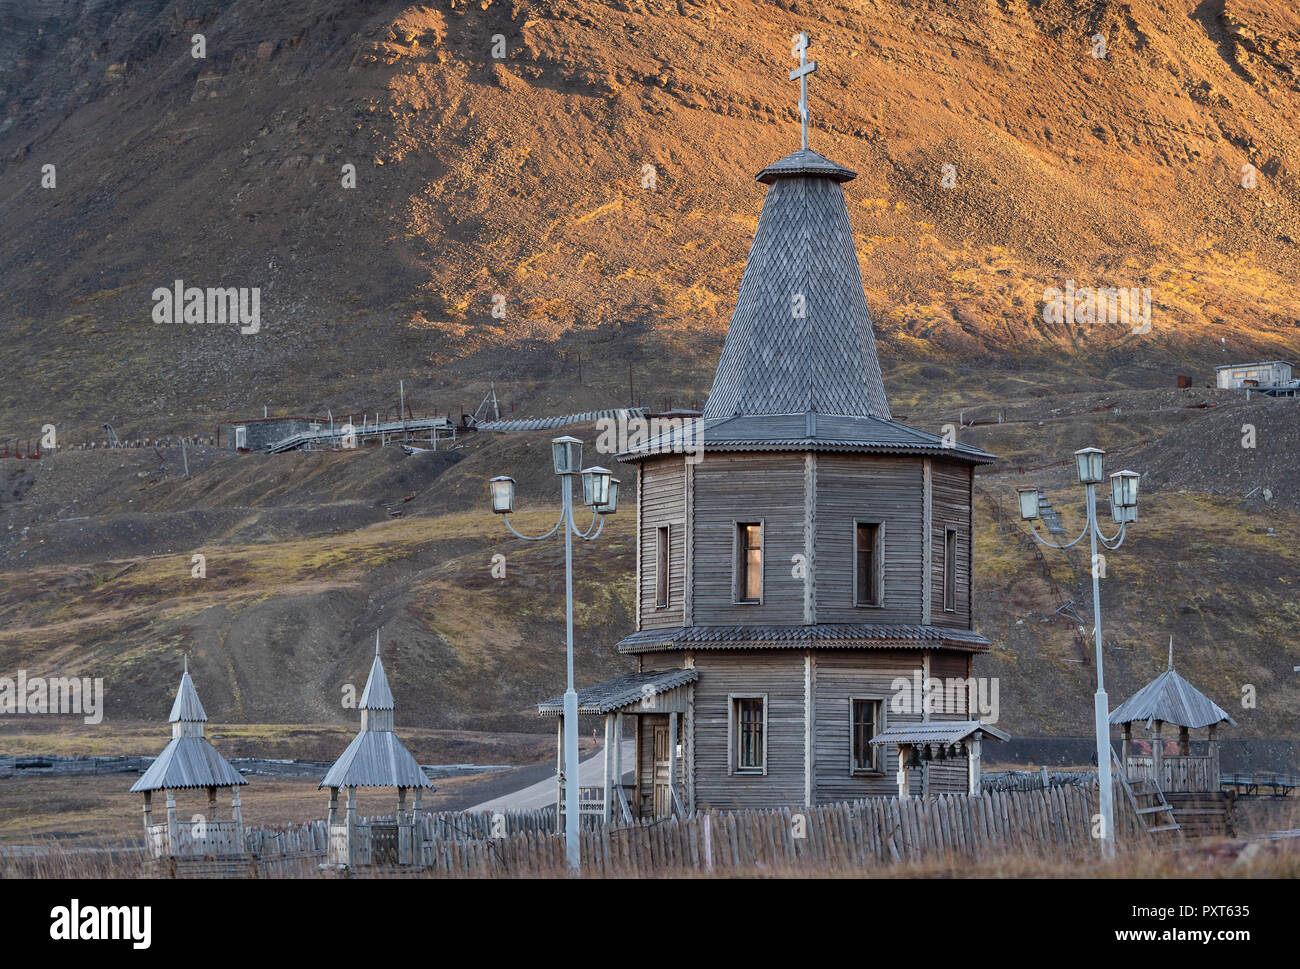 Holz- russisch-orthodoxen Kirche, Russischen Bergarbeiter Siedlung Barentsburg, Isfjorden, Spitzbergen, Svalbard, Norwegen Stockfoto